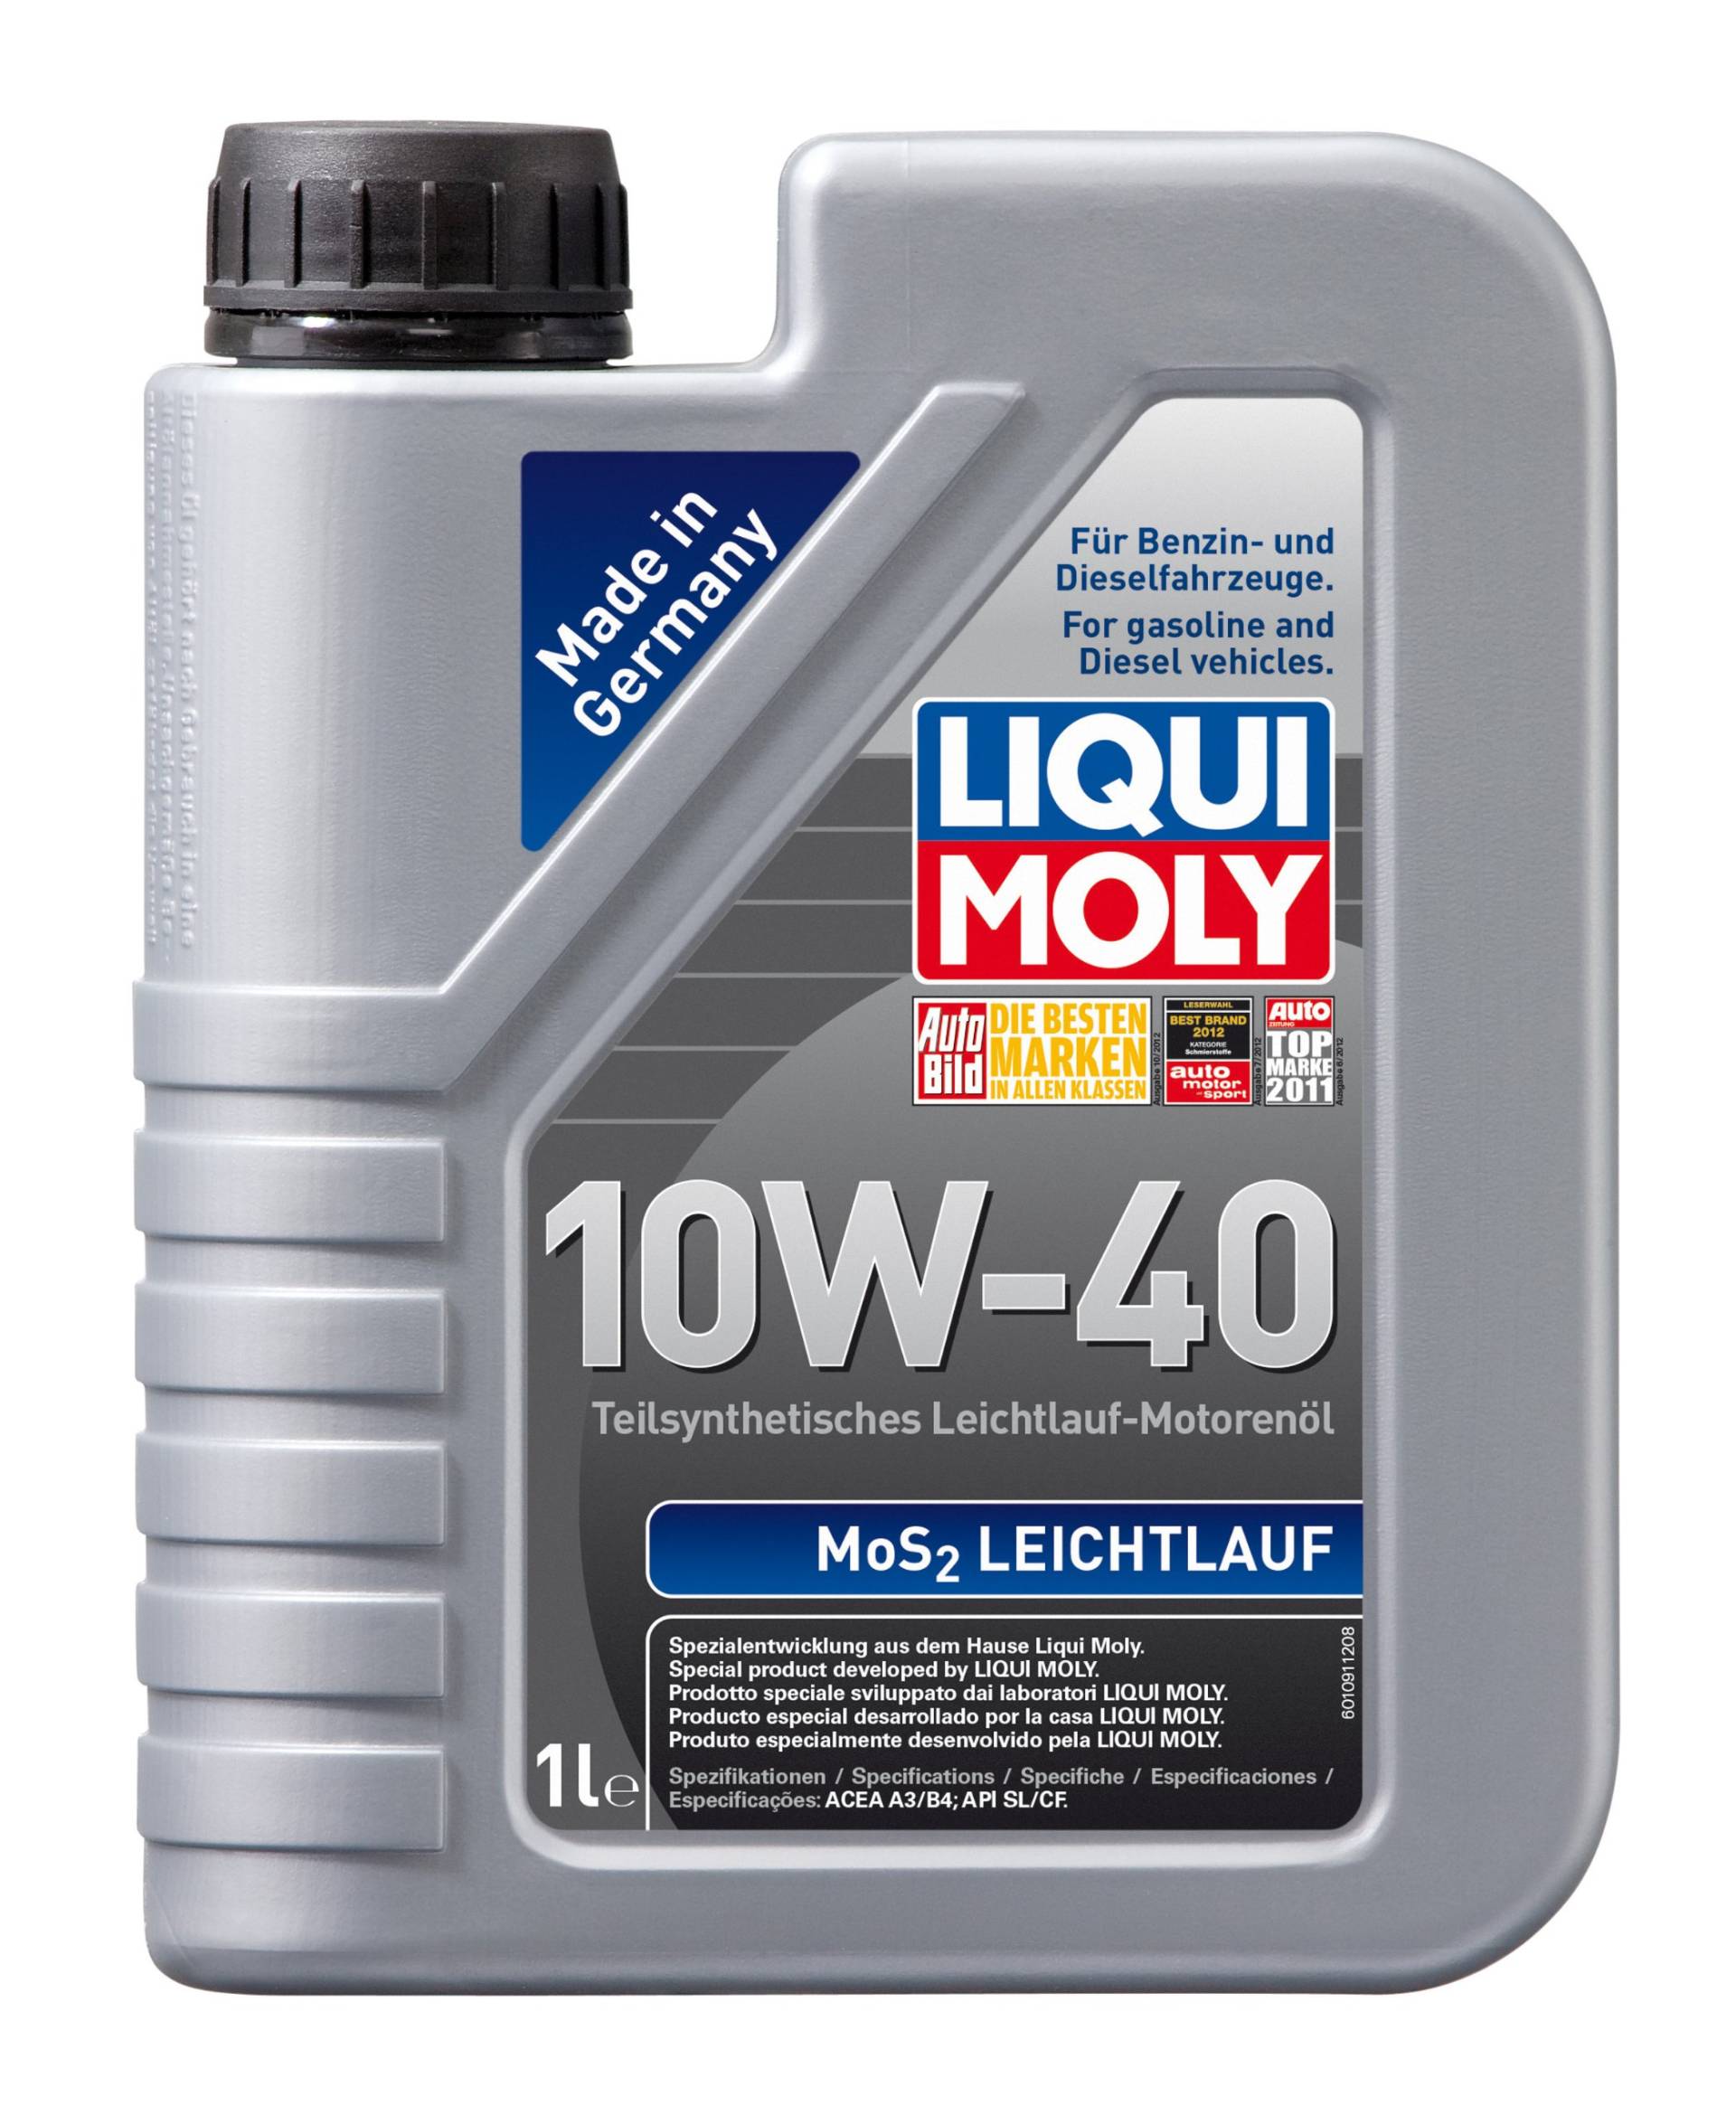 LIQUI MOLY MoS2 Leichtlauf 10W-40 | 1 L | teilsynthetisches Motoröl | Art.-Nr.: 1091 von Liqui Moly